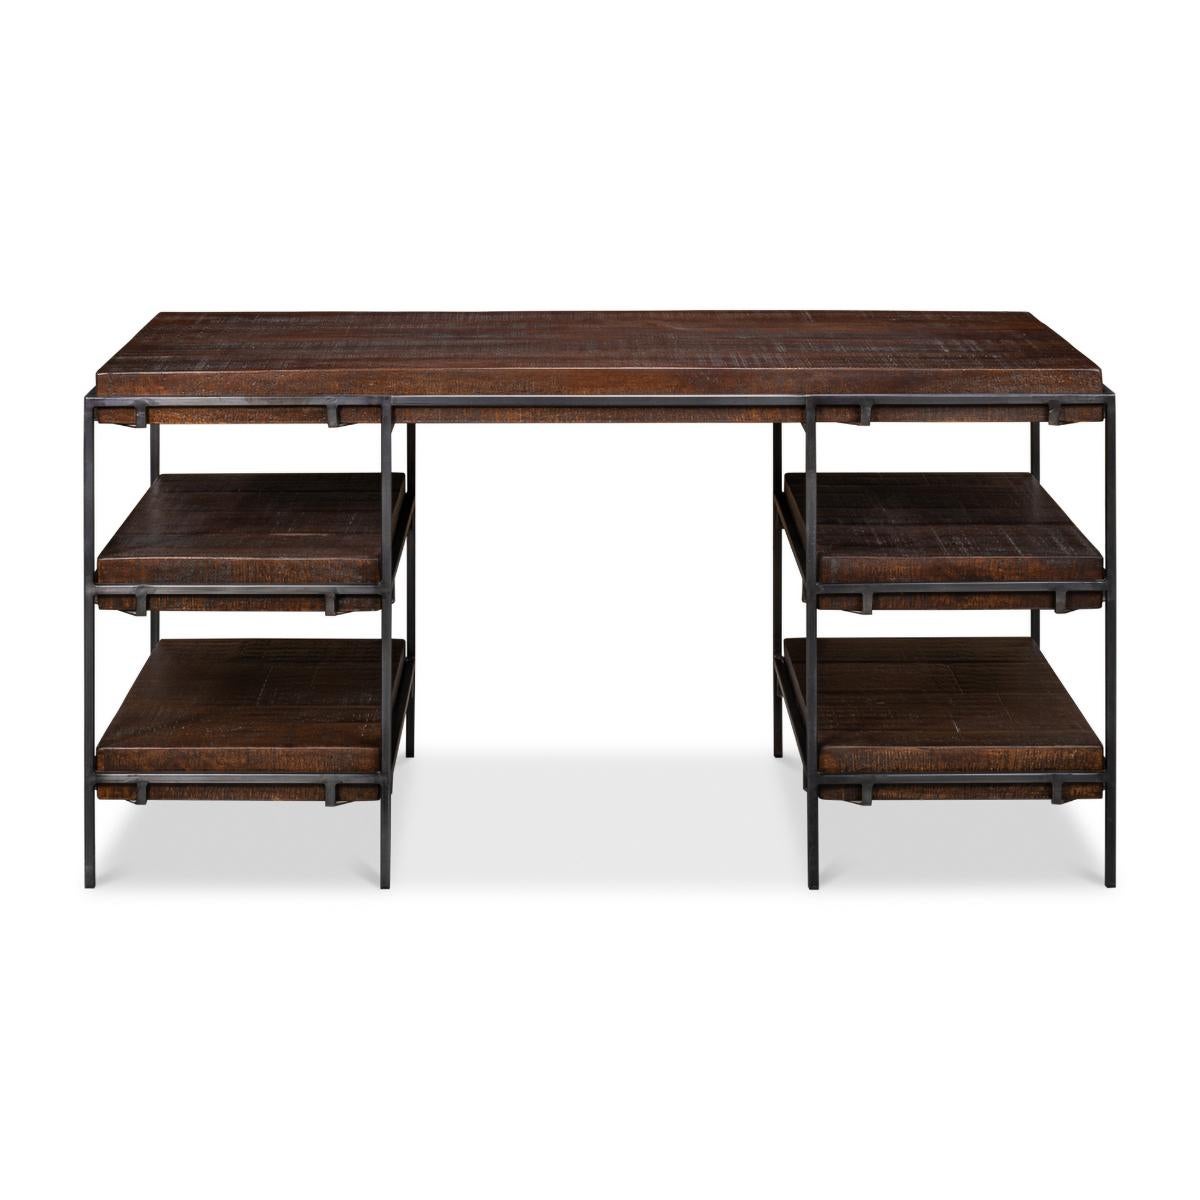 Ein moderner Industrial-Schreibtisch aus Eisen und Mangoholz in unserem dunklen Ascot-Finish, mit einem kühnen Stil und Design. Ein idealer Schreibtisch für das Büro zu Hause oder im Unternehmen.

Abmessungen: 60